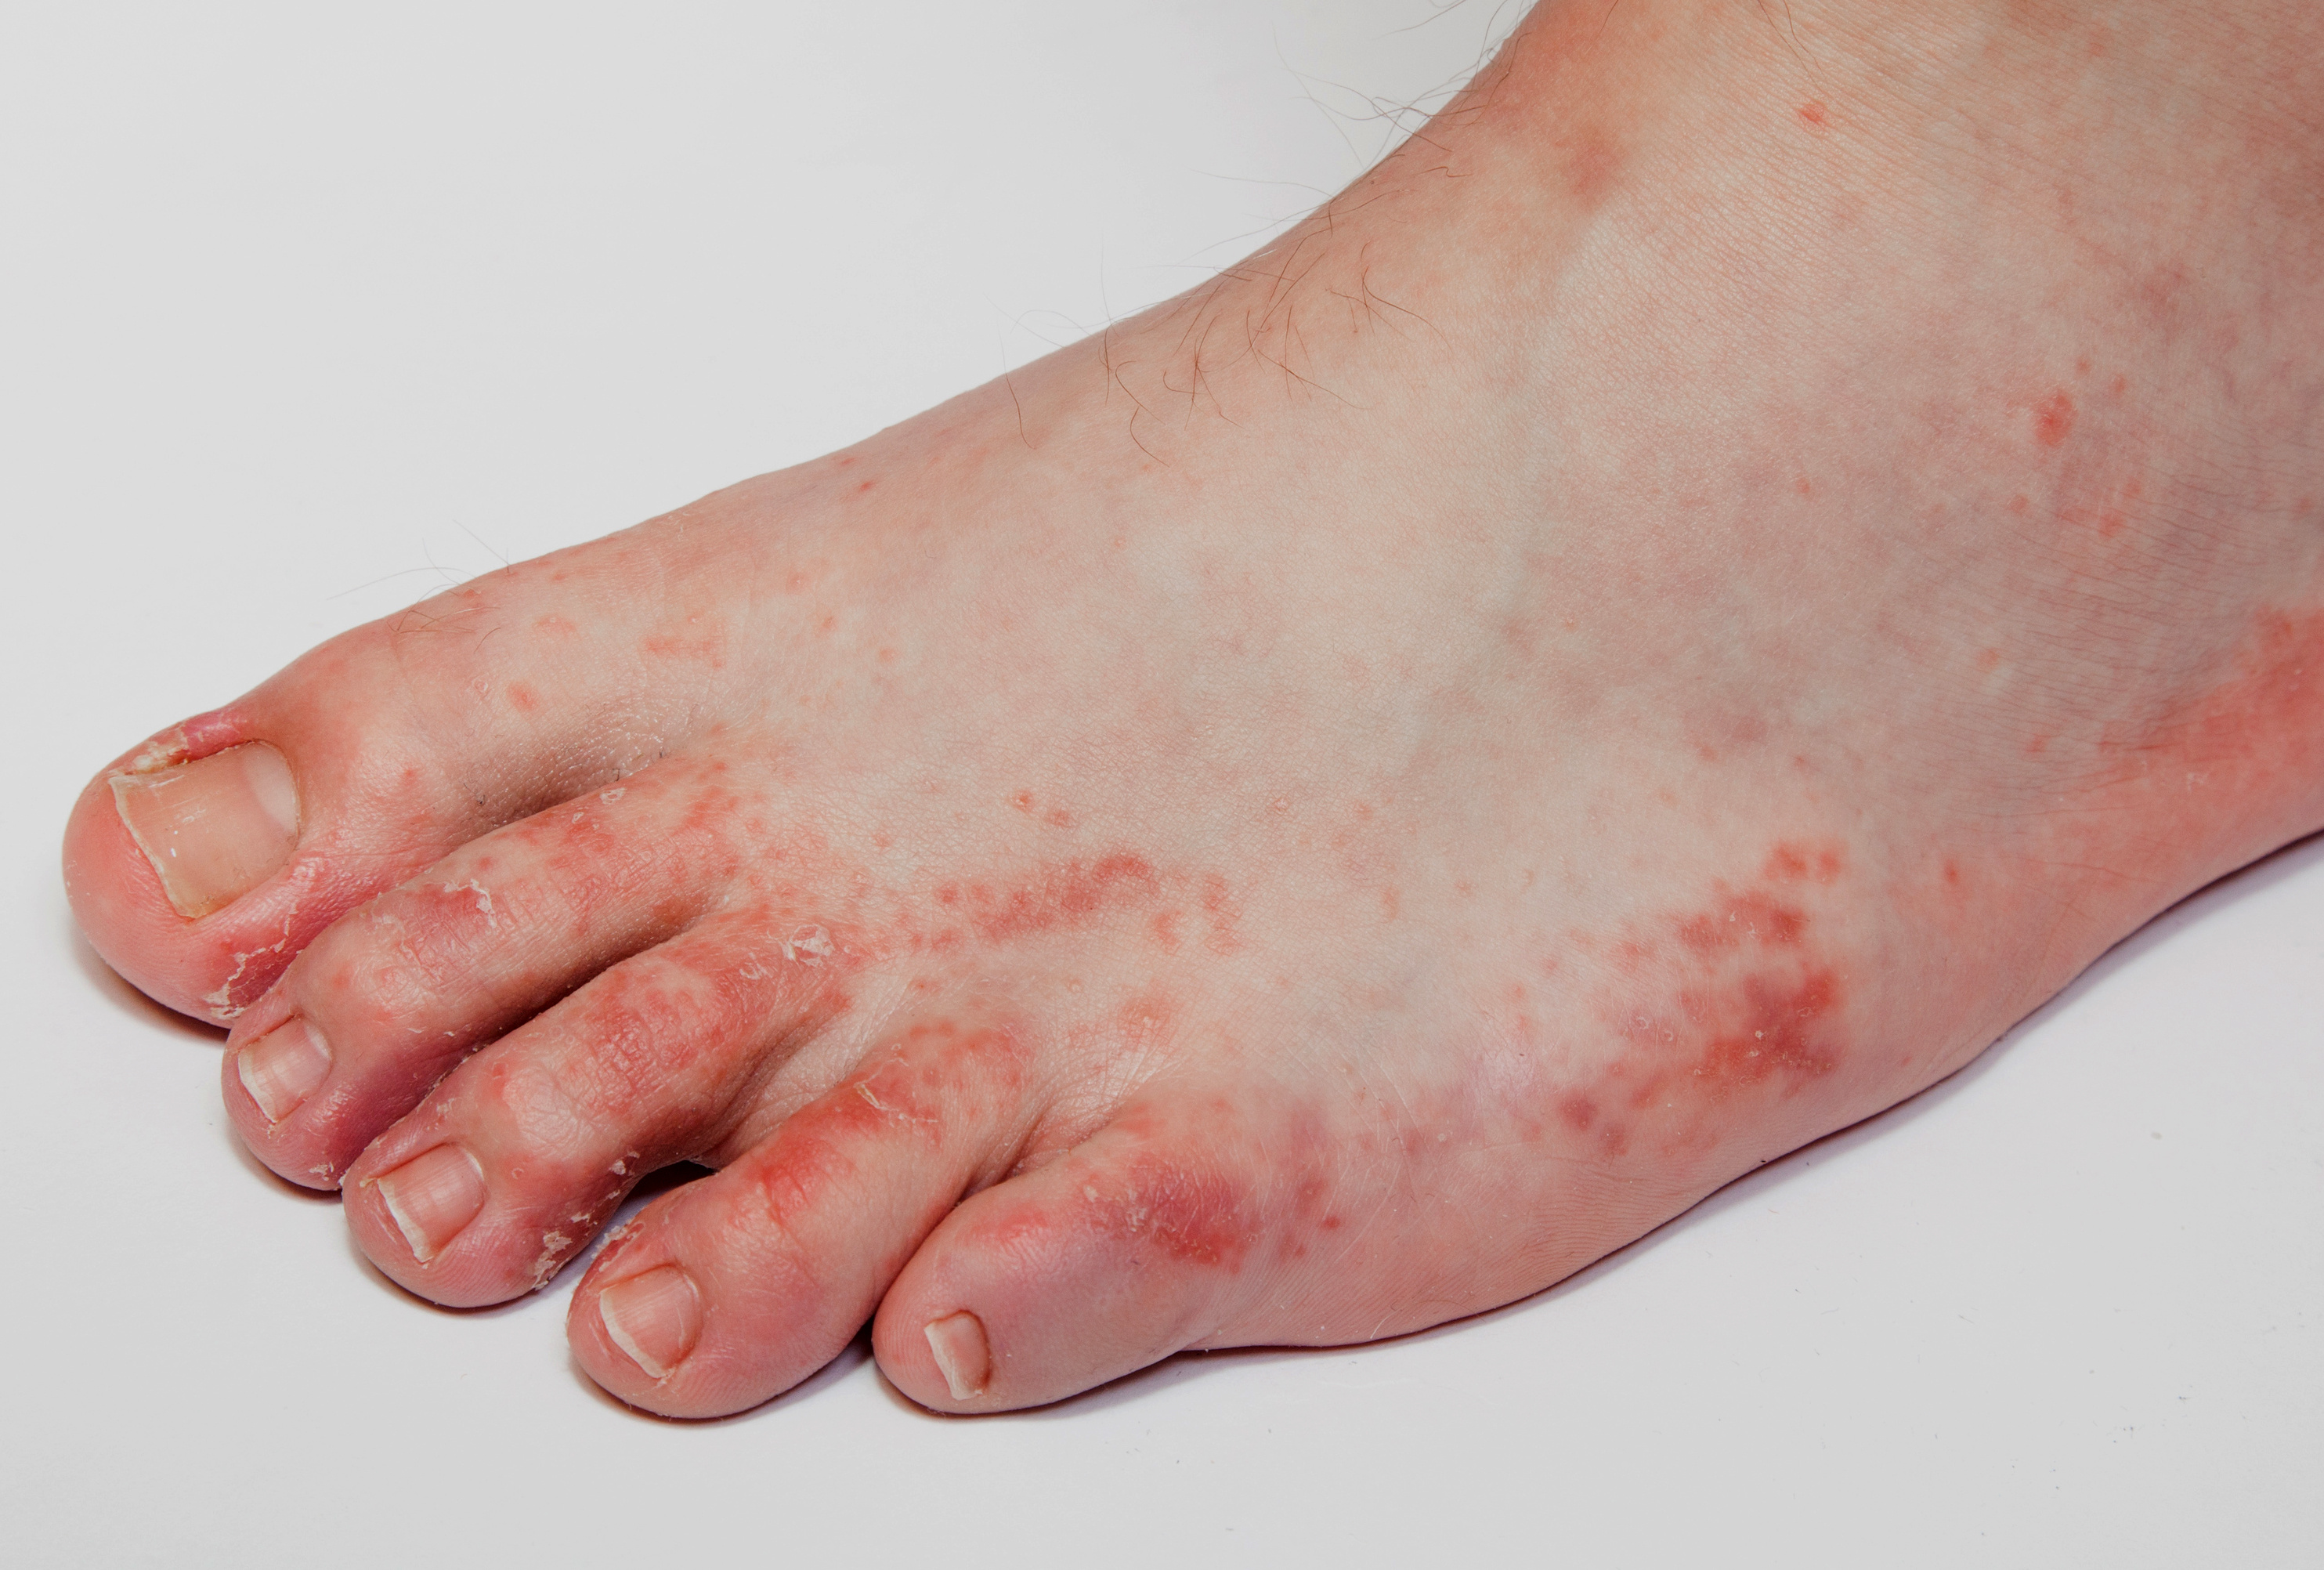 Koronavírus-fertőzést is jelezhetenek a foltok a lábon